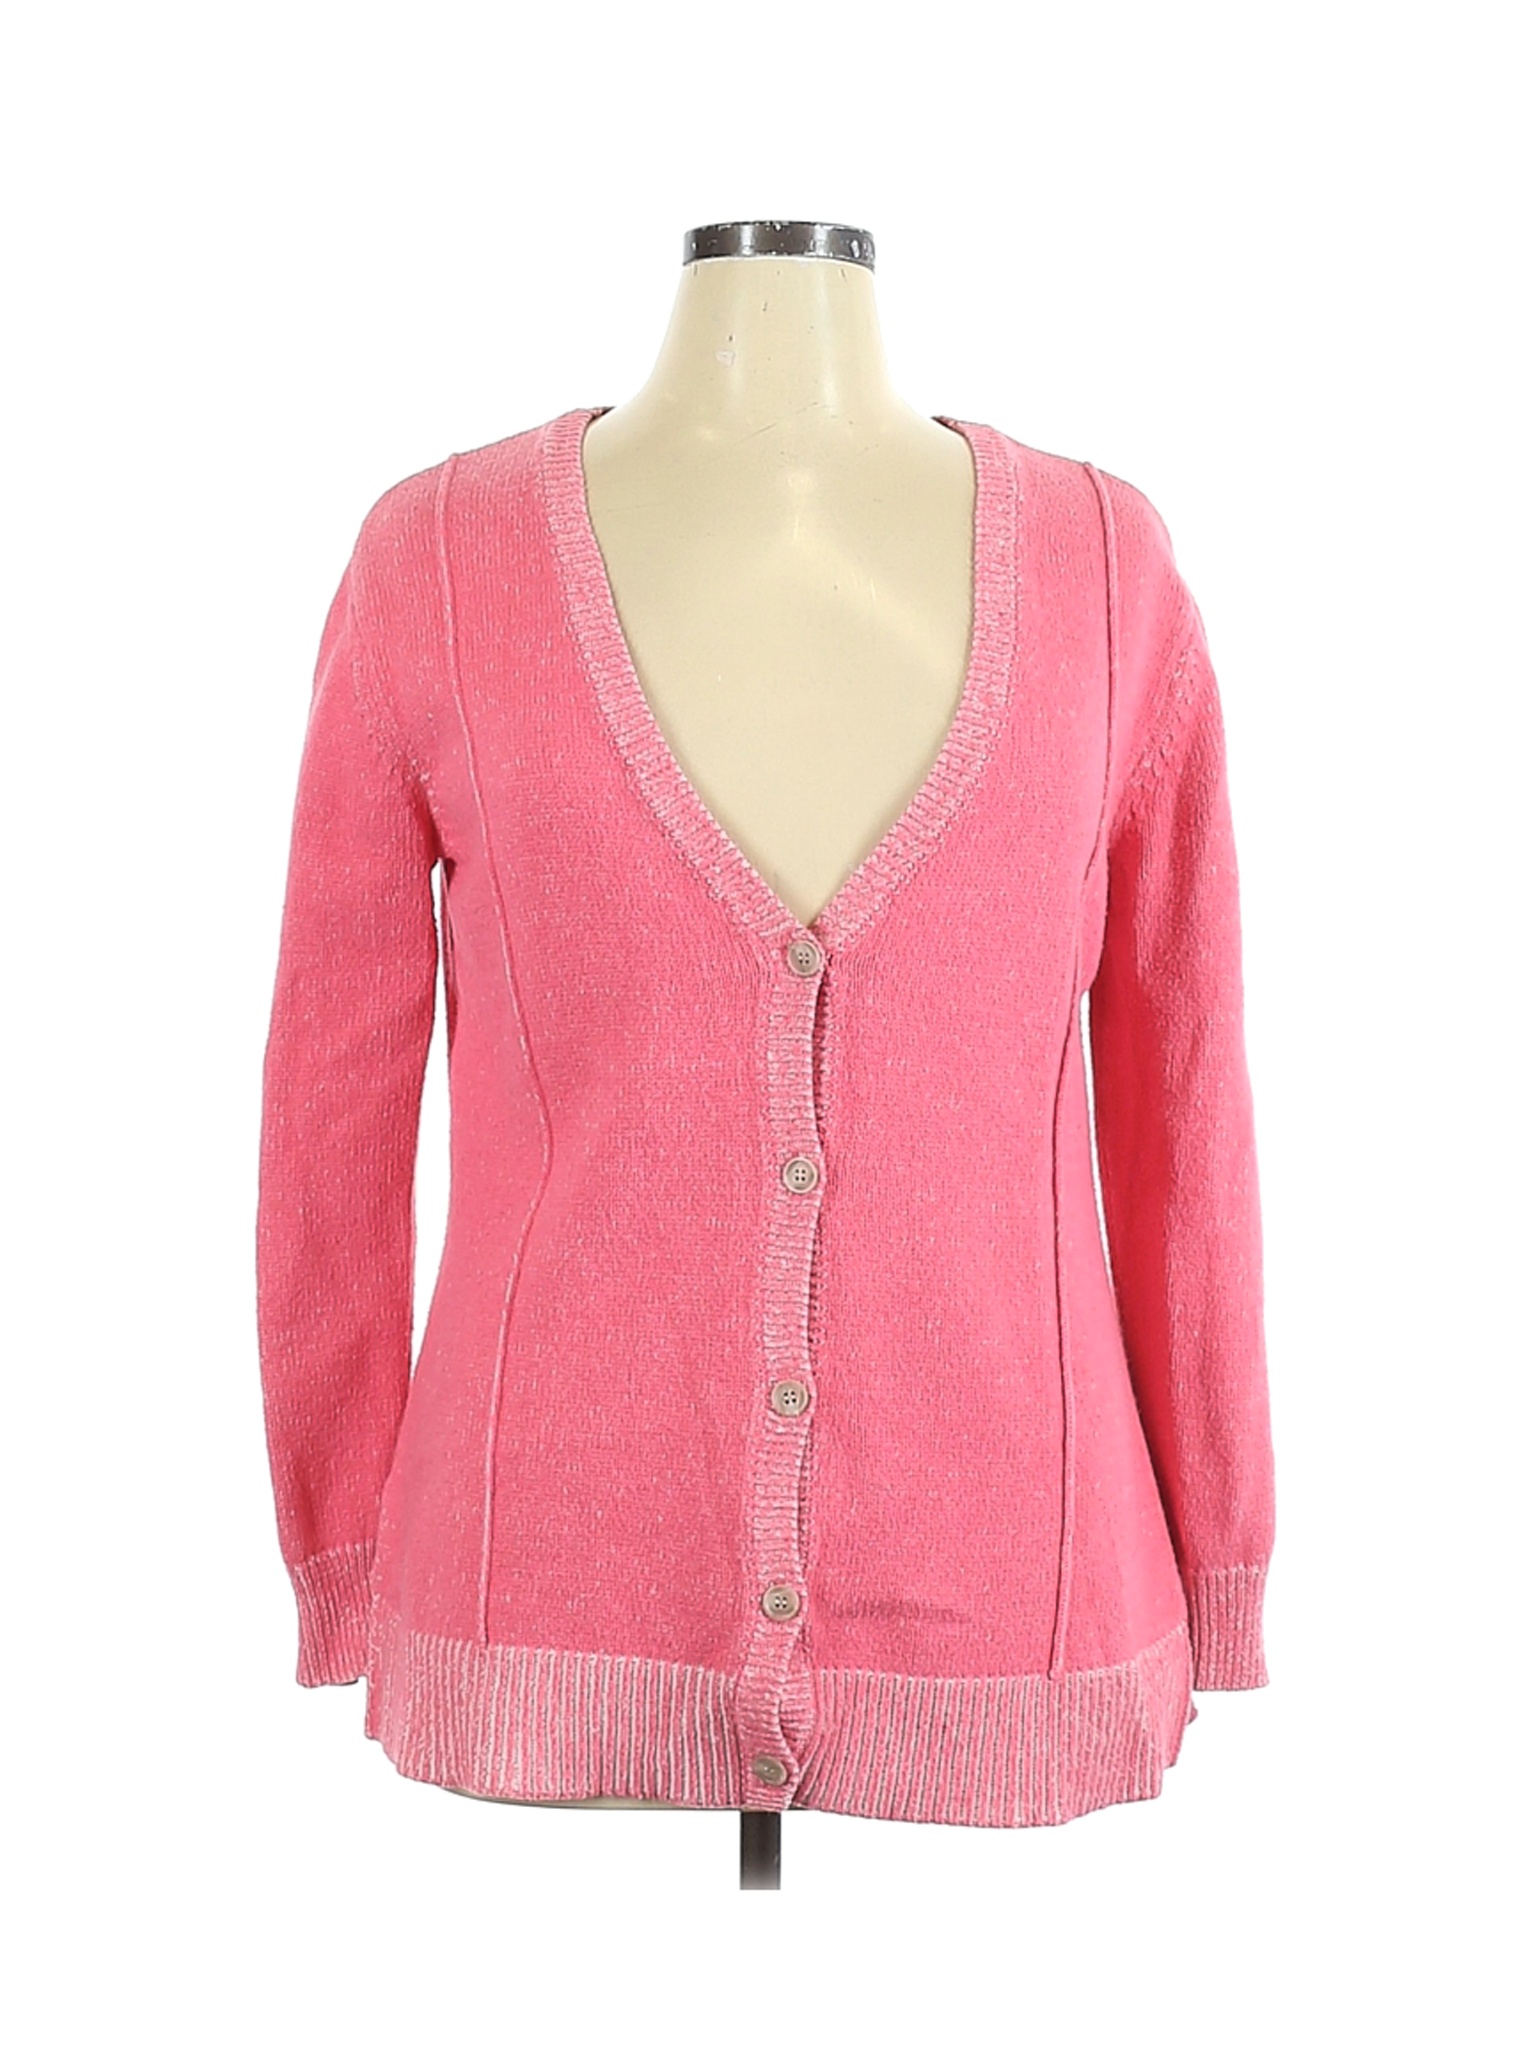 Lane Bryant Women Pink Cardigan 14 Plus | eBay